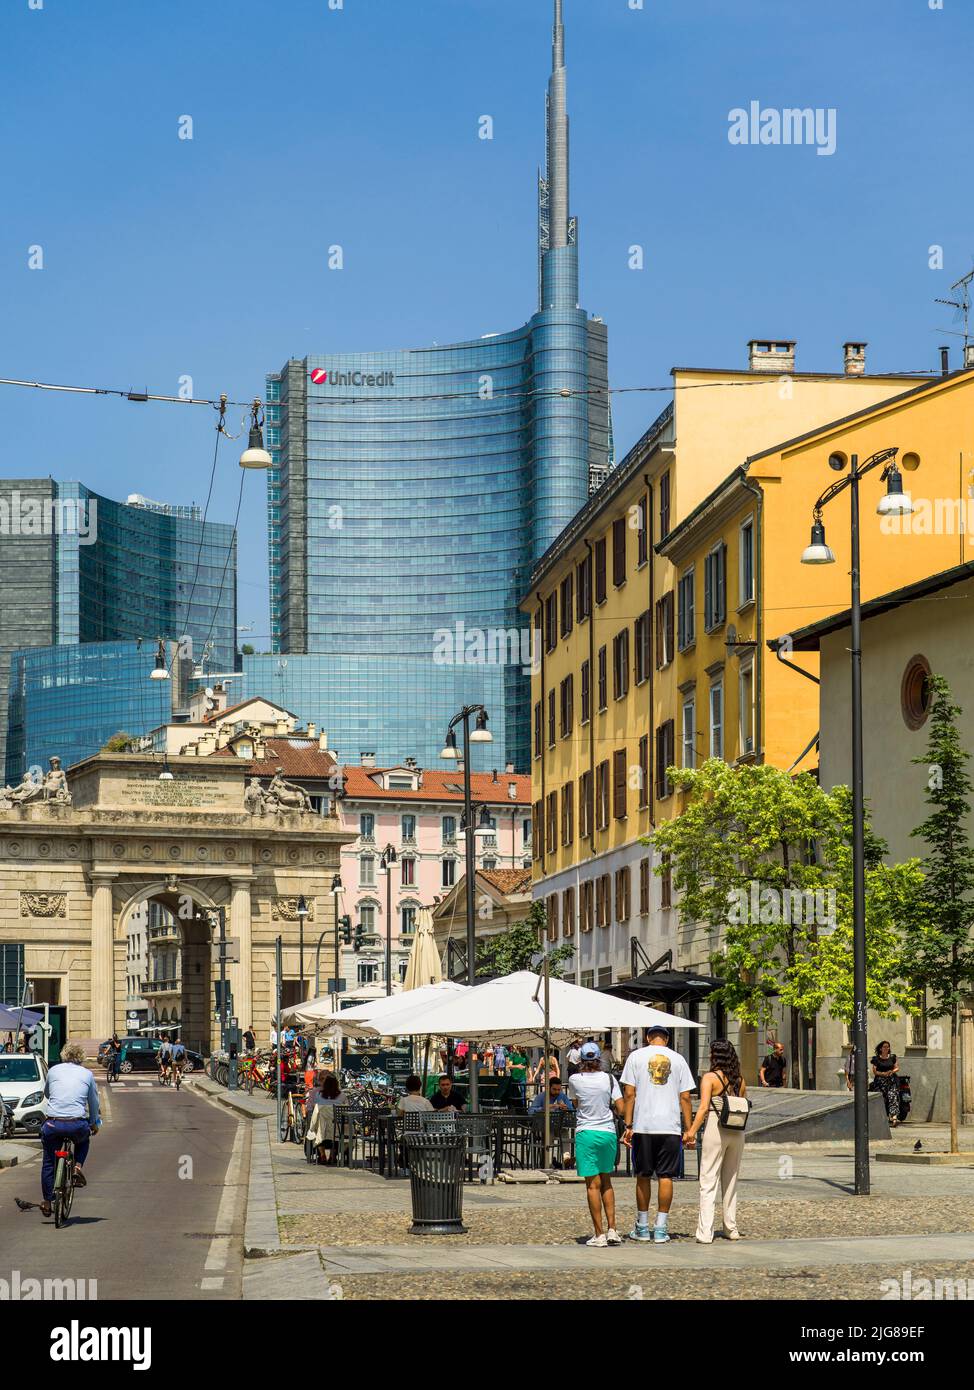 Italy, Milano, Street scene Stock Photo